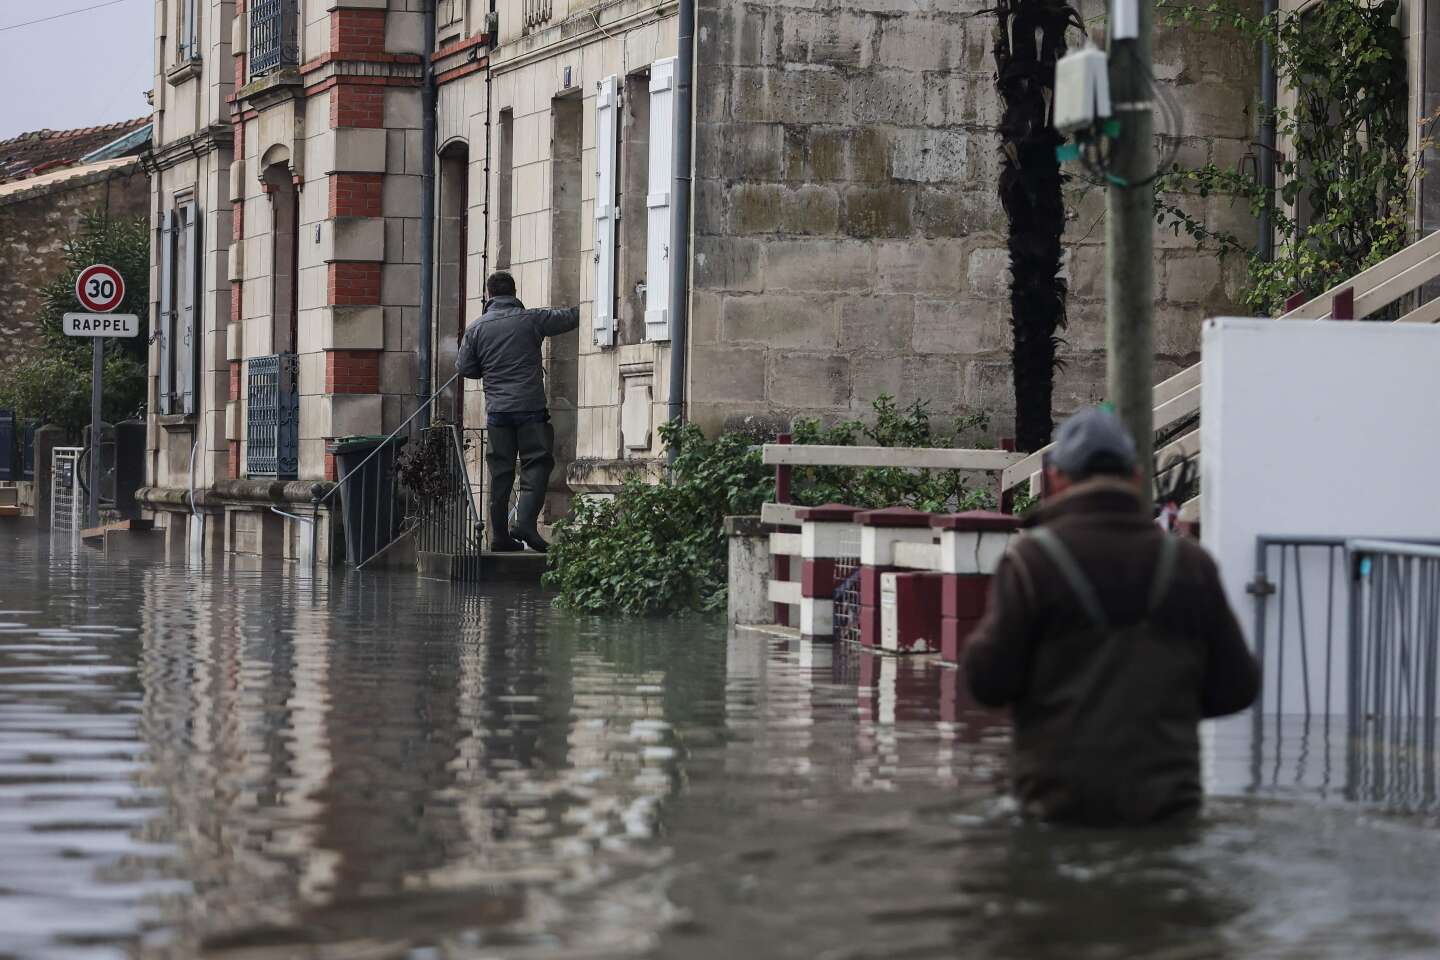 Inondations : la Charente maintenue en vigilance orange, après un pic de crue dimanche